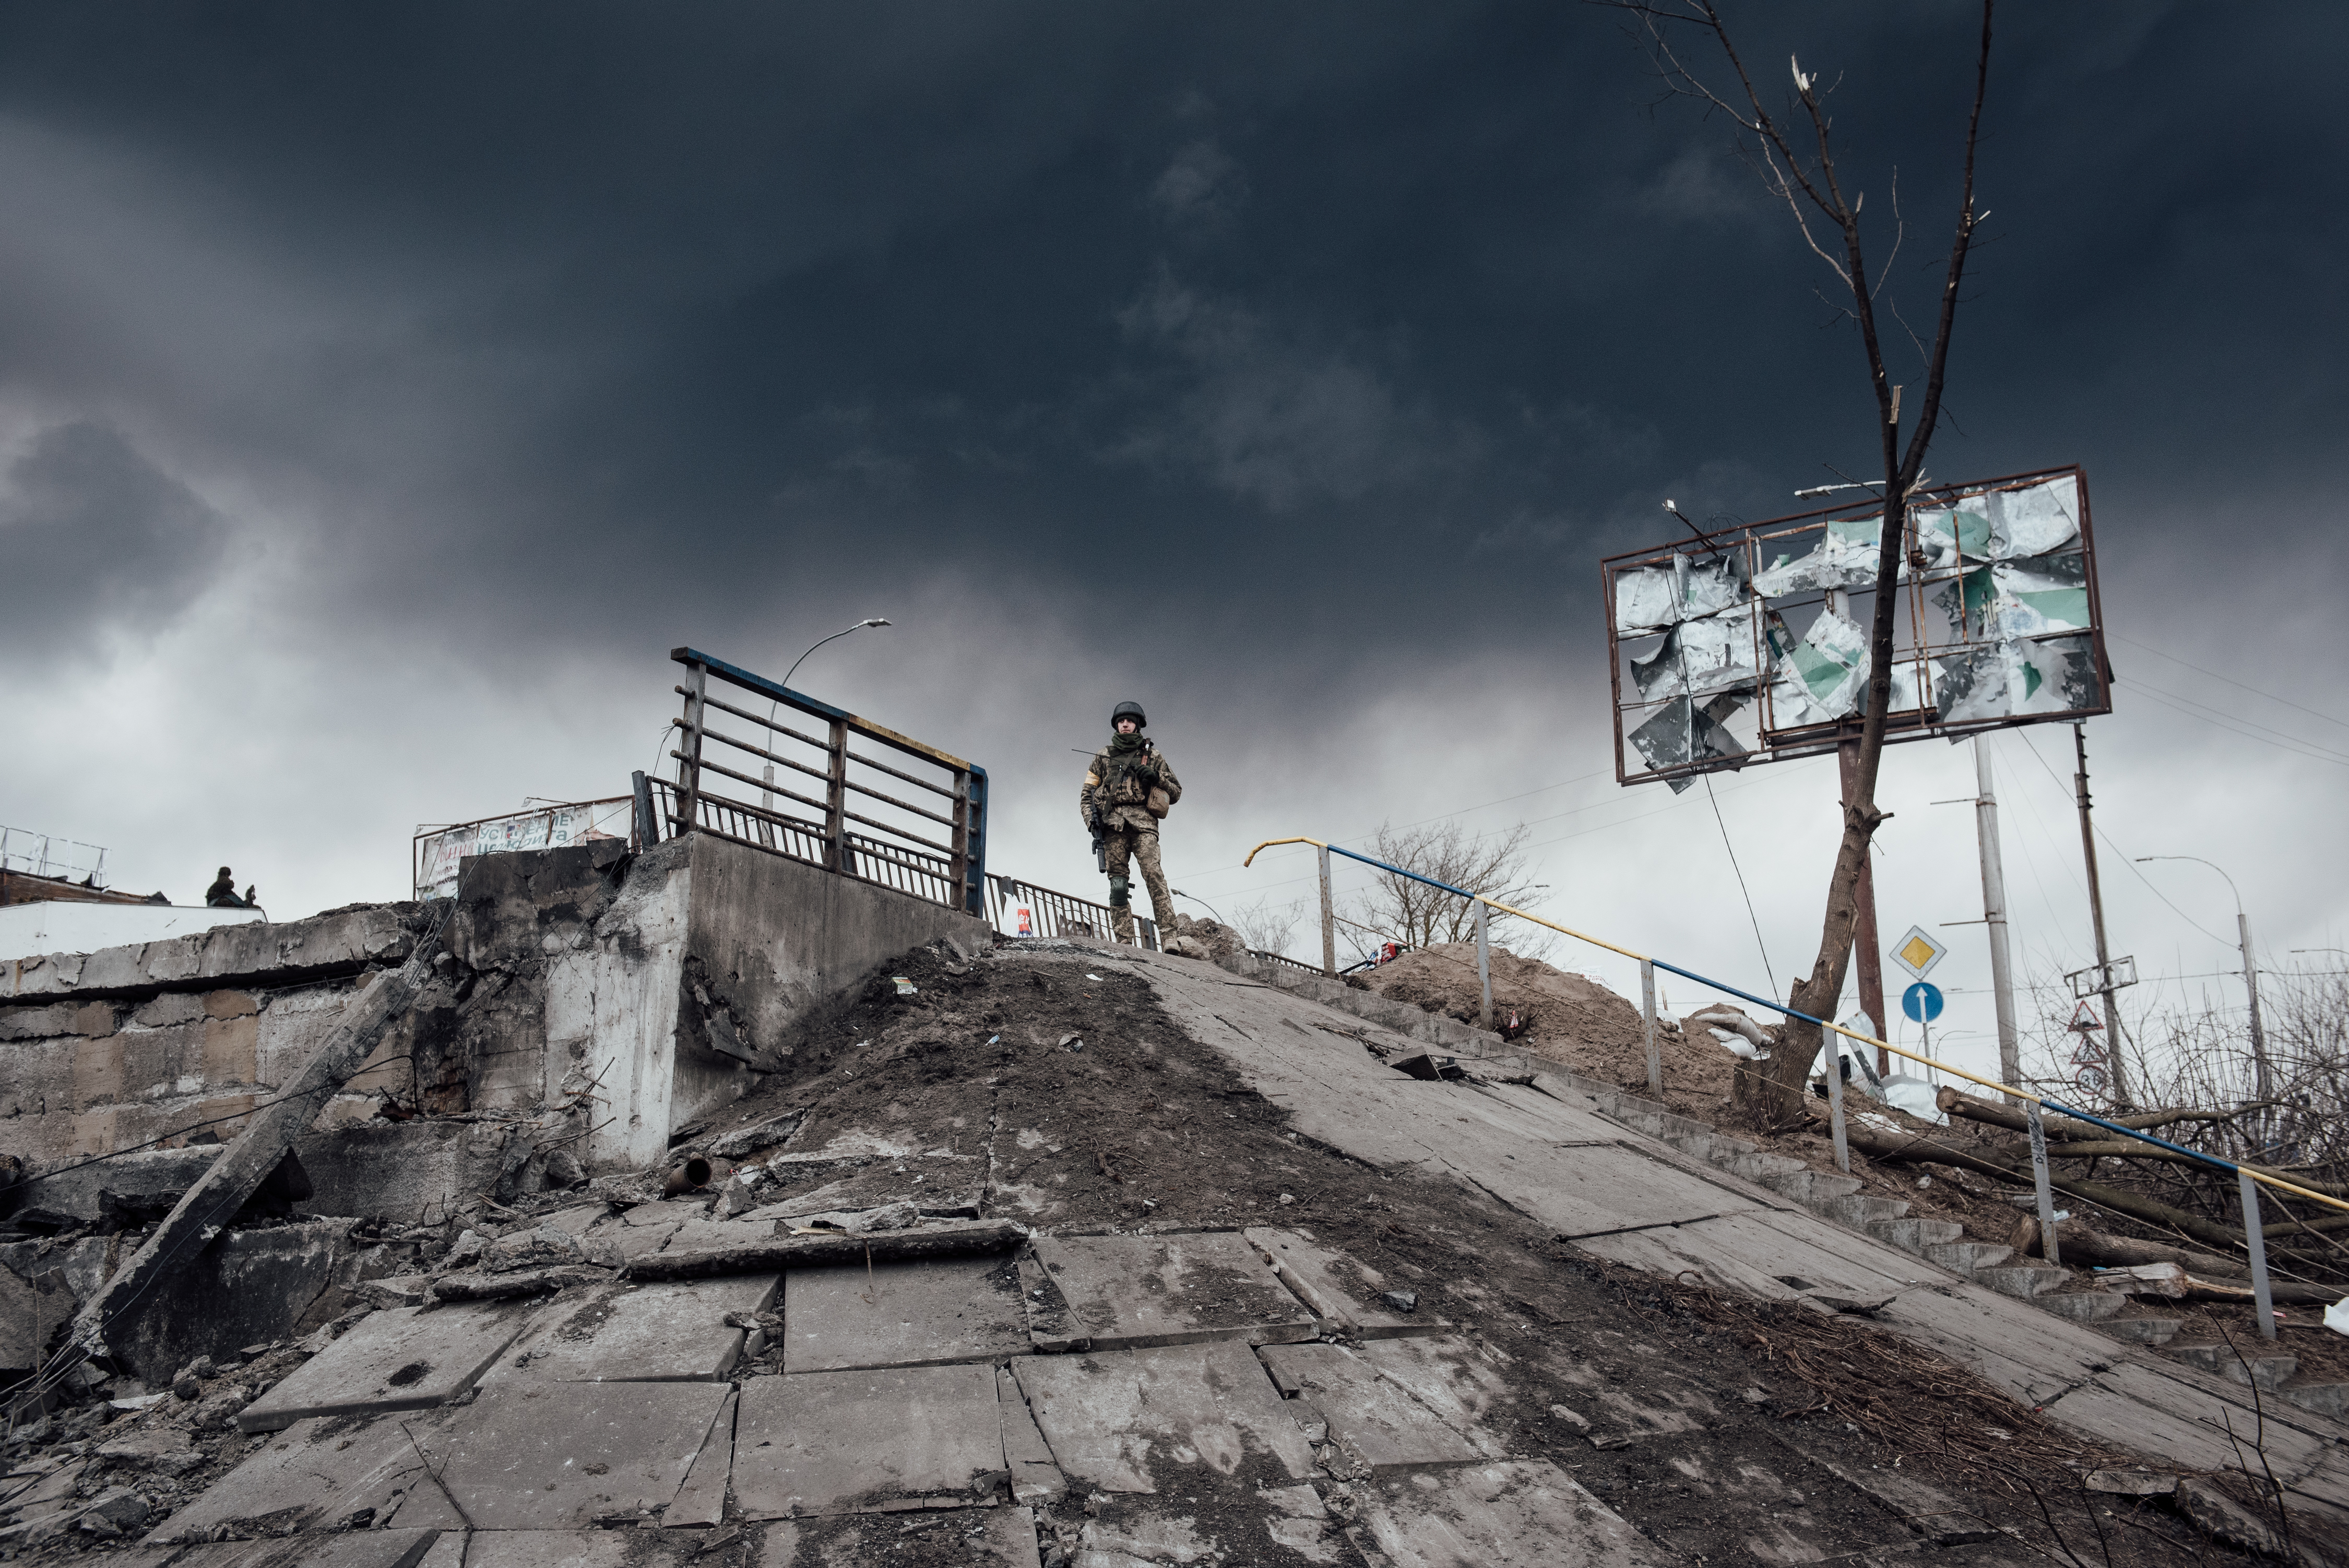 Prajurit Ukraina mengawasi Irpin, kota yang menjadi medan perang utama tak jauh dari ibu kota Kyiv. Foto ini diambil pada 7 Maret 2022.